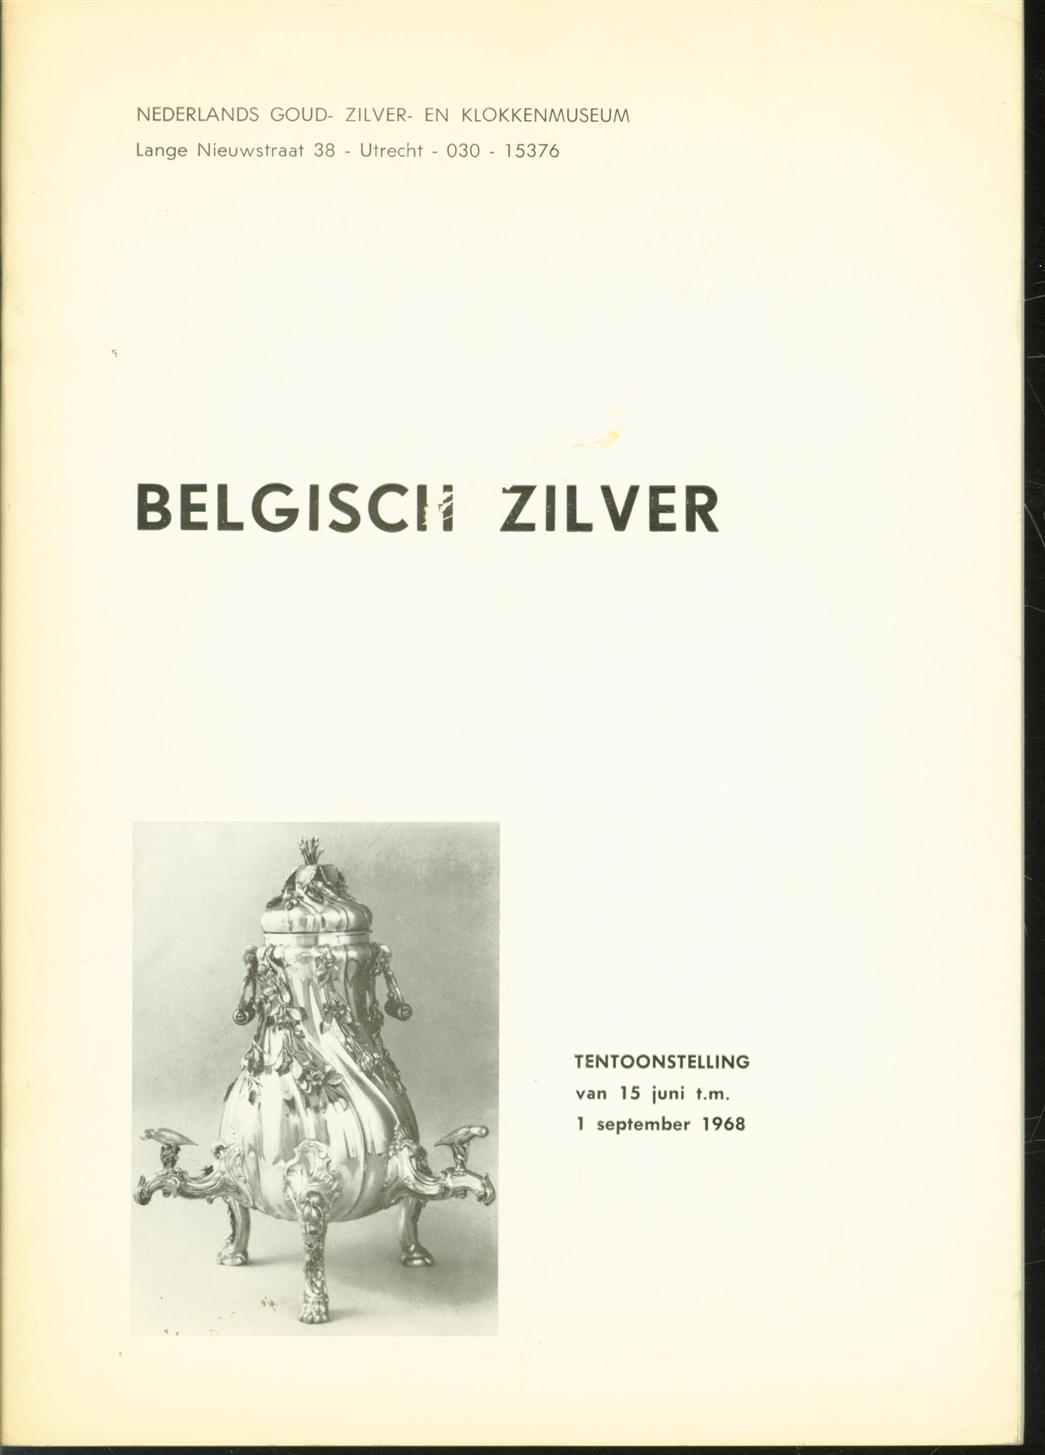 Zeeman, J., Nederlands Goud-, Zilver- en Klokkenmuseum, Schoonhoven - Belgisch zilver, tentoonstelling van 15 juni t.m. 1 september 1968, Nederlands Goud-, Zilver en Klokkenmuseum, Utrecht